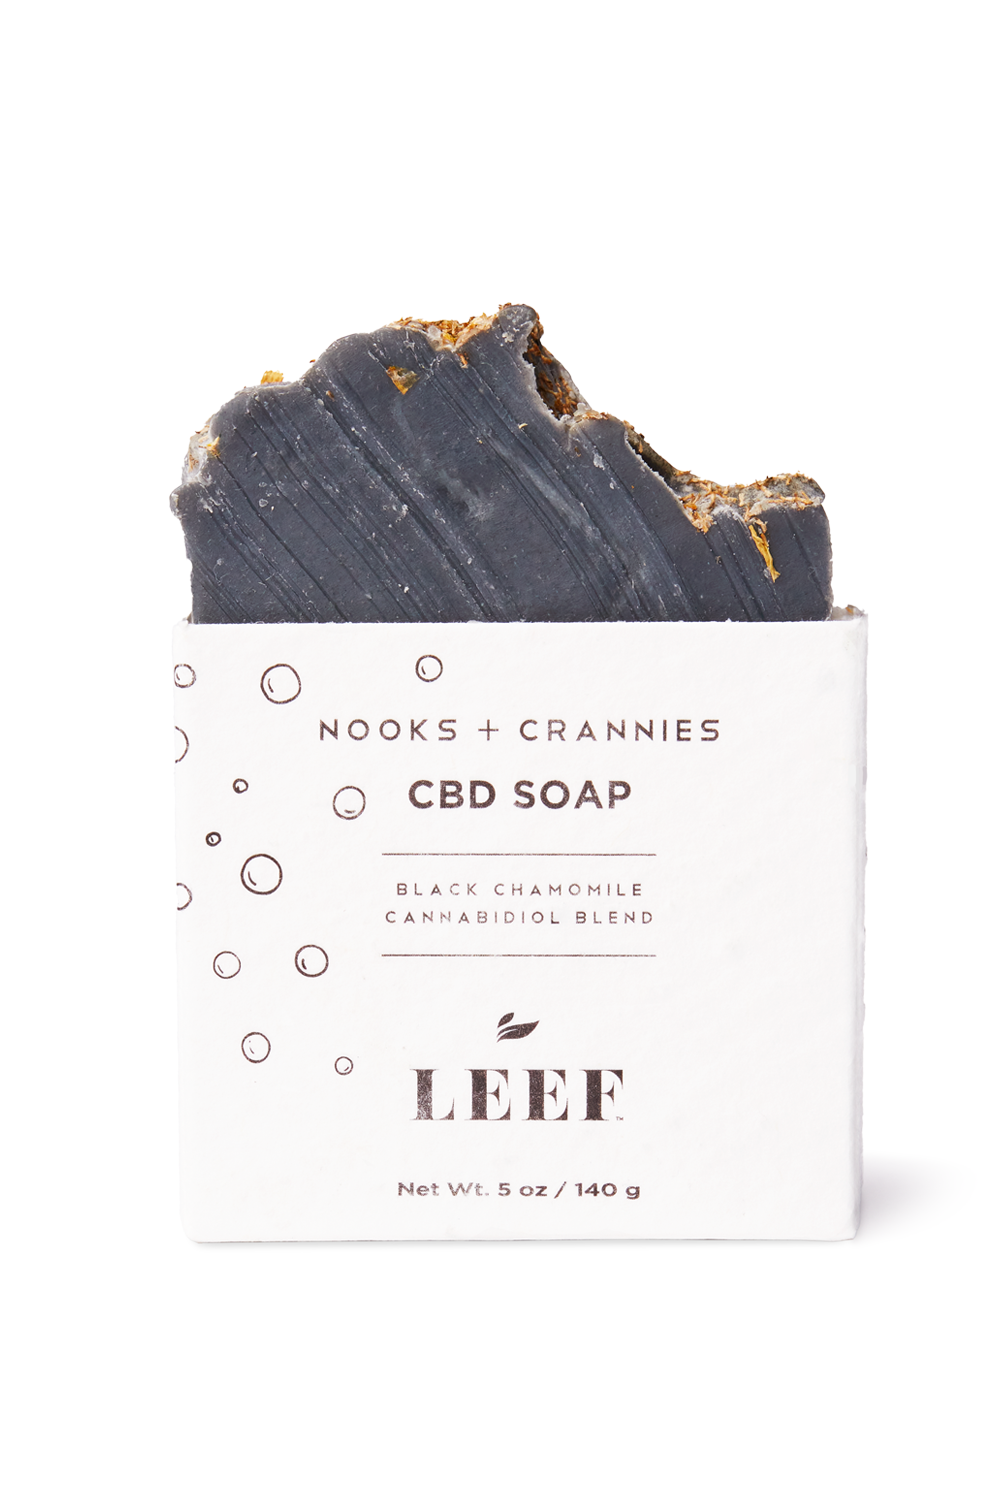 Leef Organics Nooks + Crannies CBD Soap